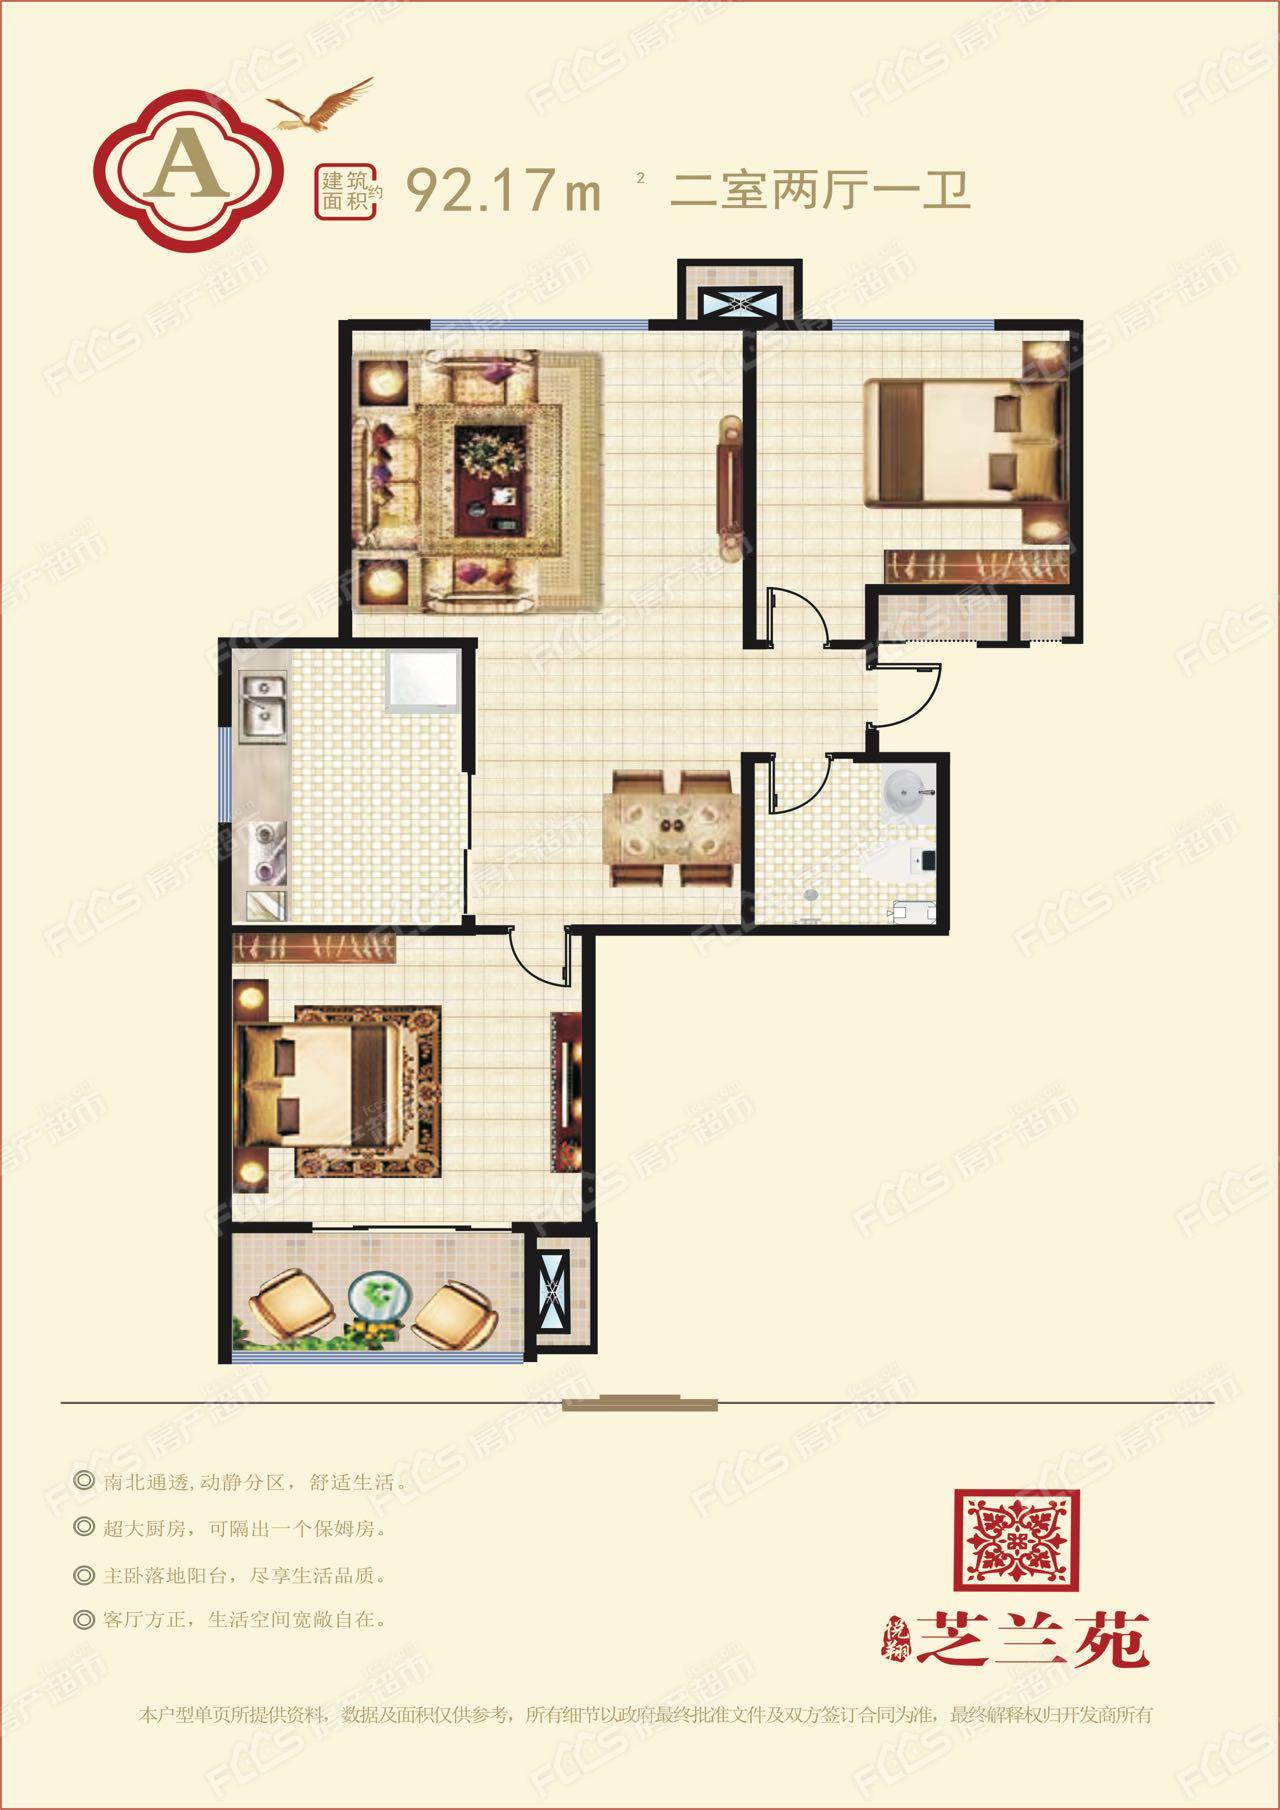 悦翔·芝兰苑高层户型图92.17平米两室两厅一卫